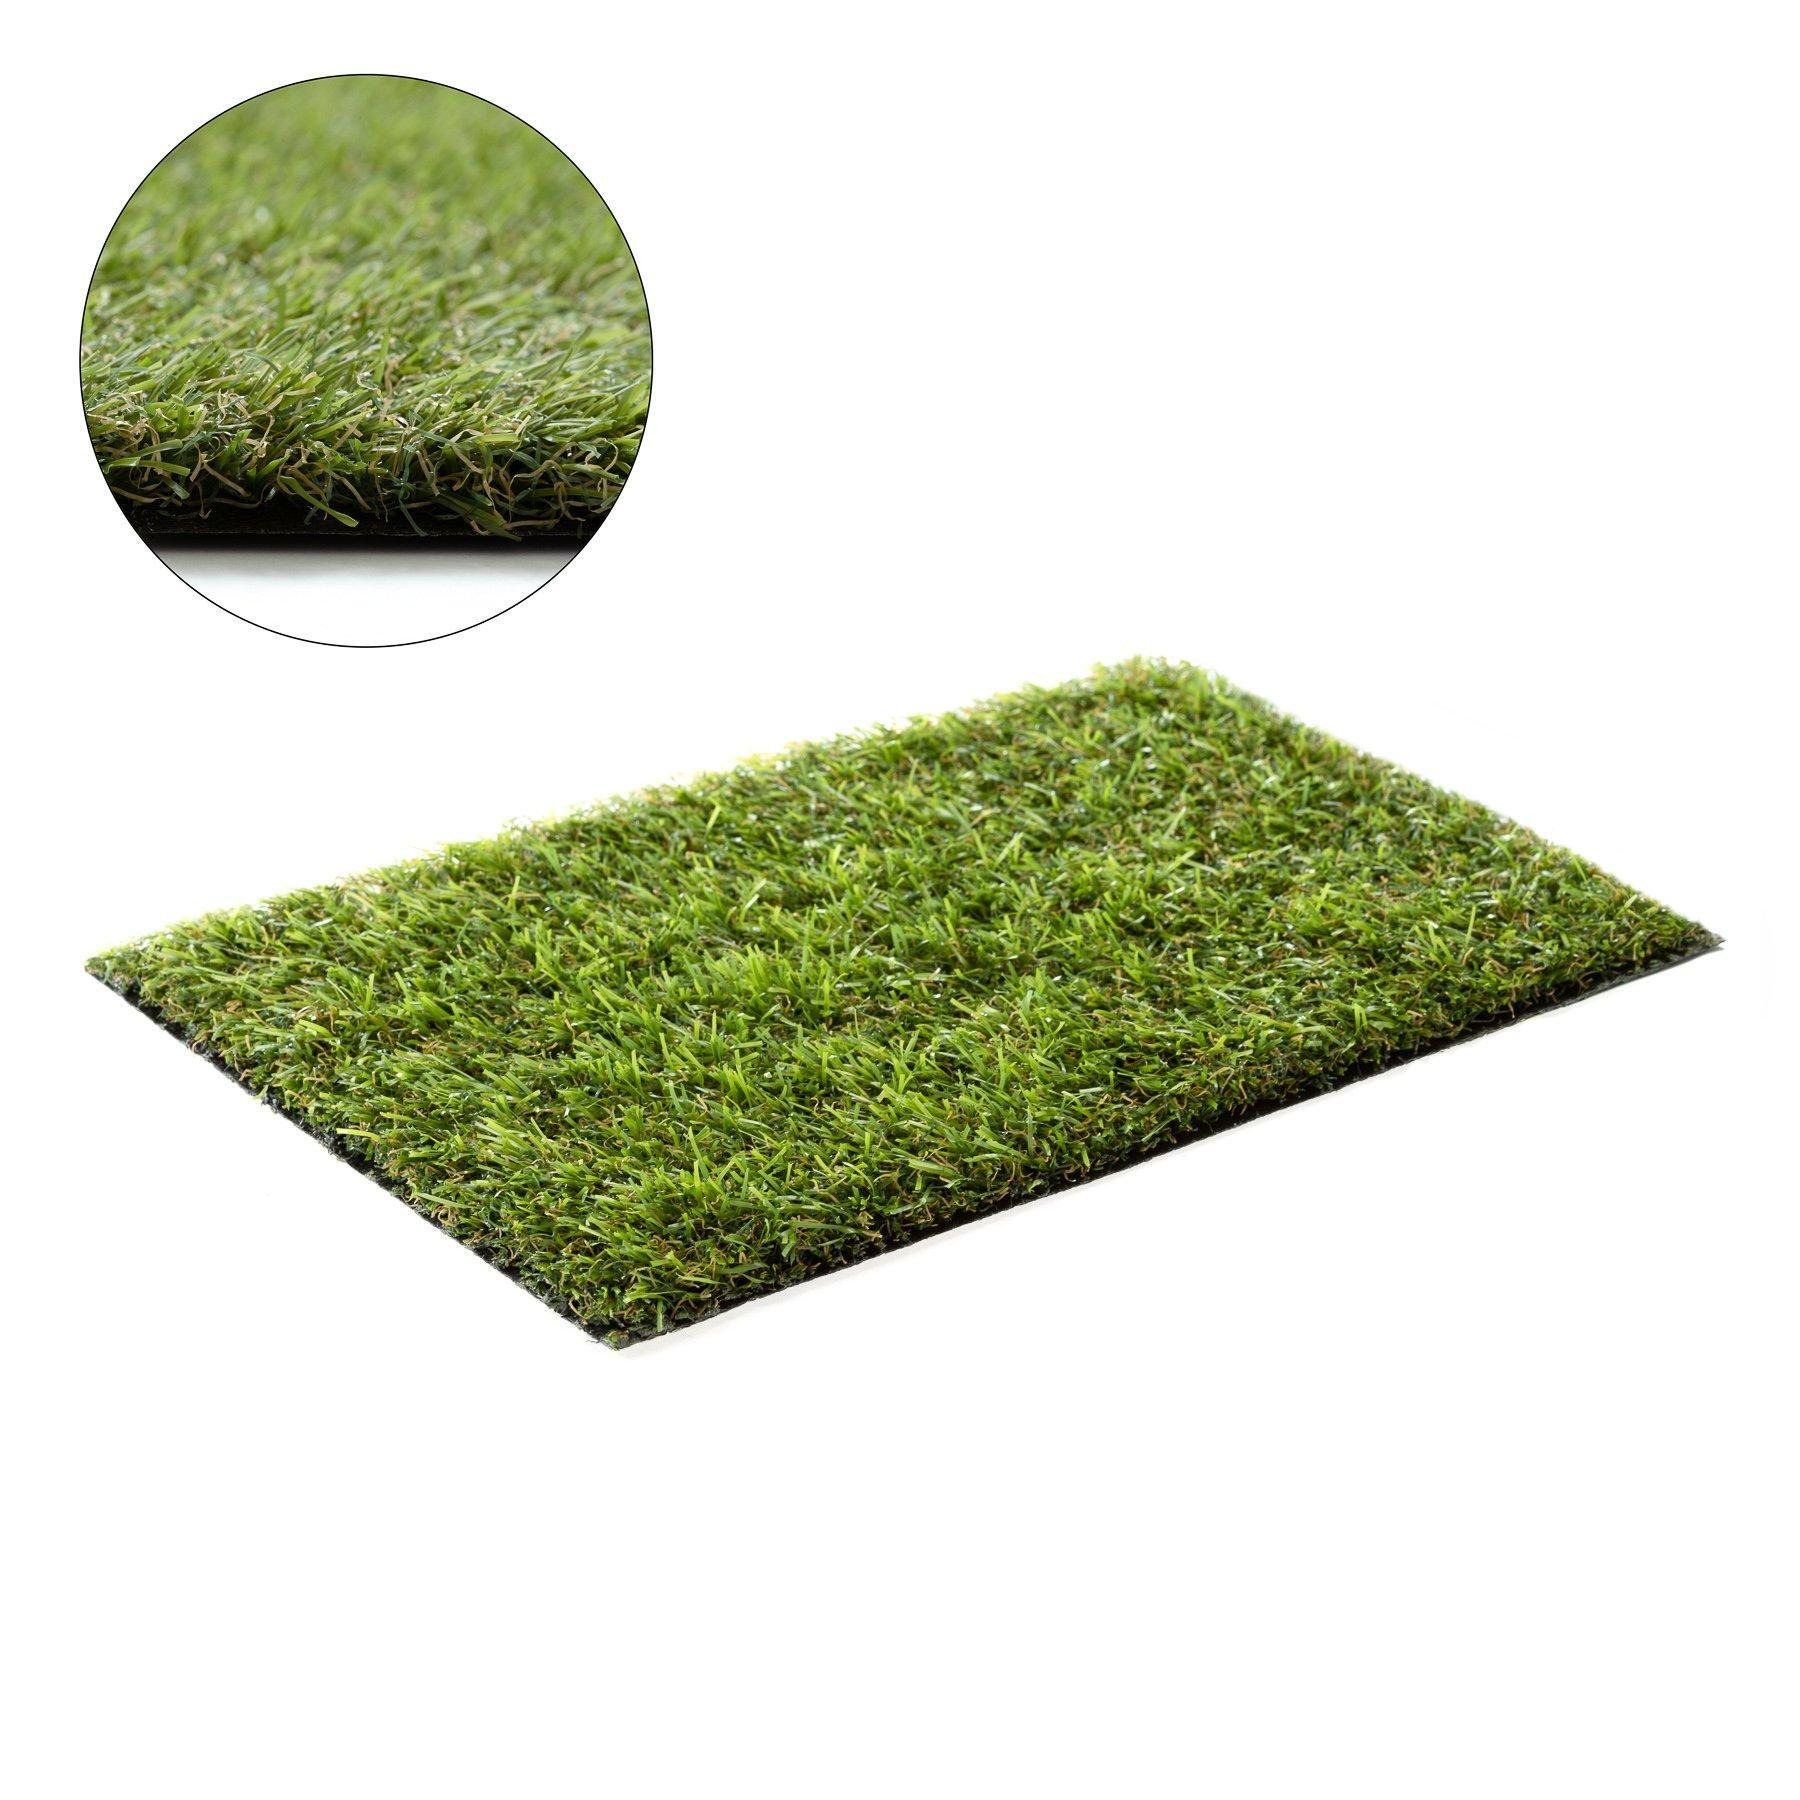 Artificial Grass Alvira Rug - image 1